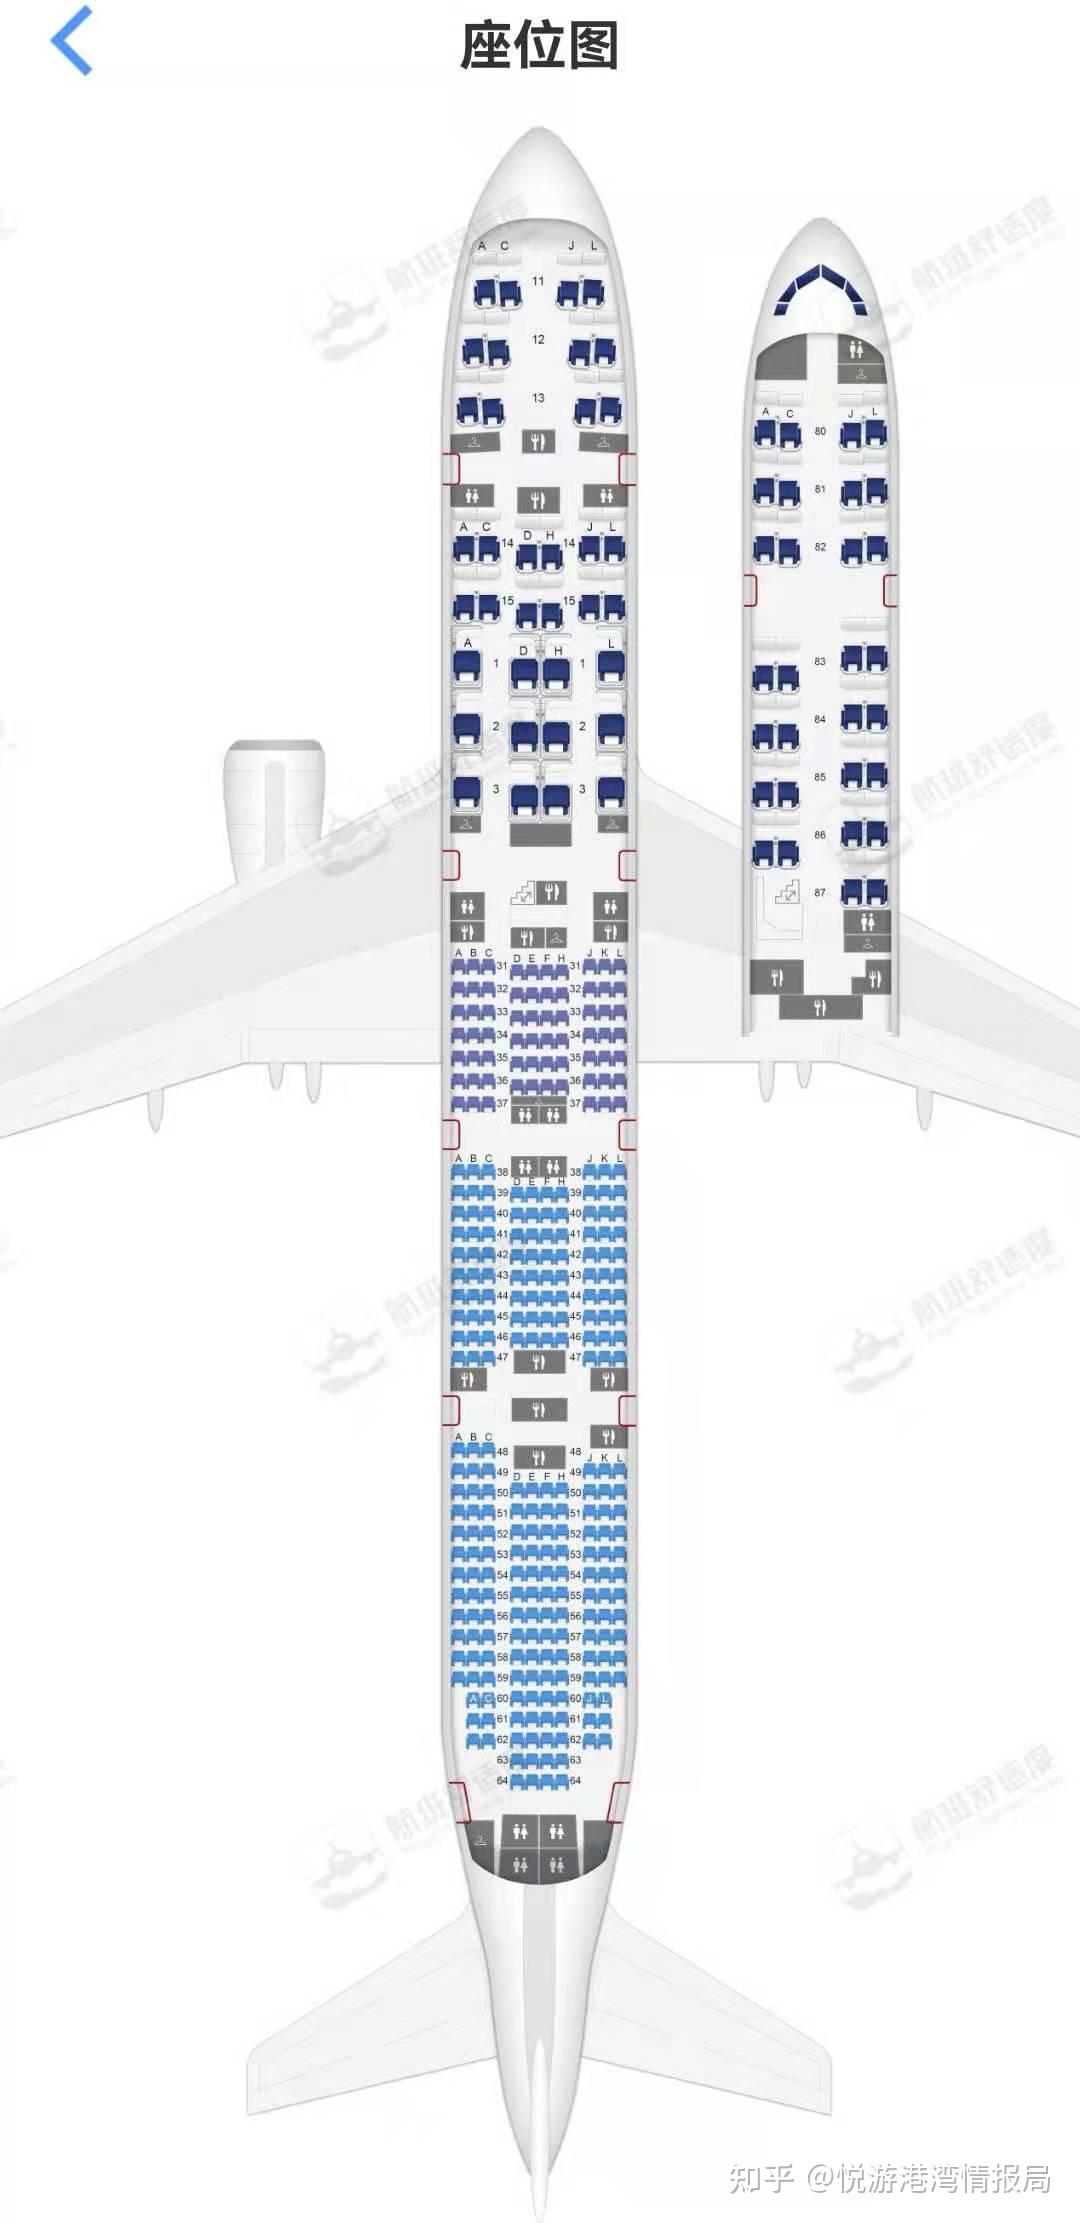 国航748座位图图片